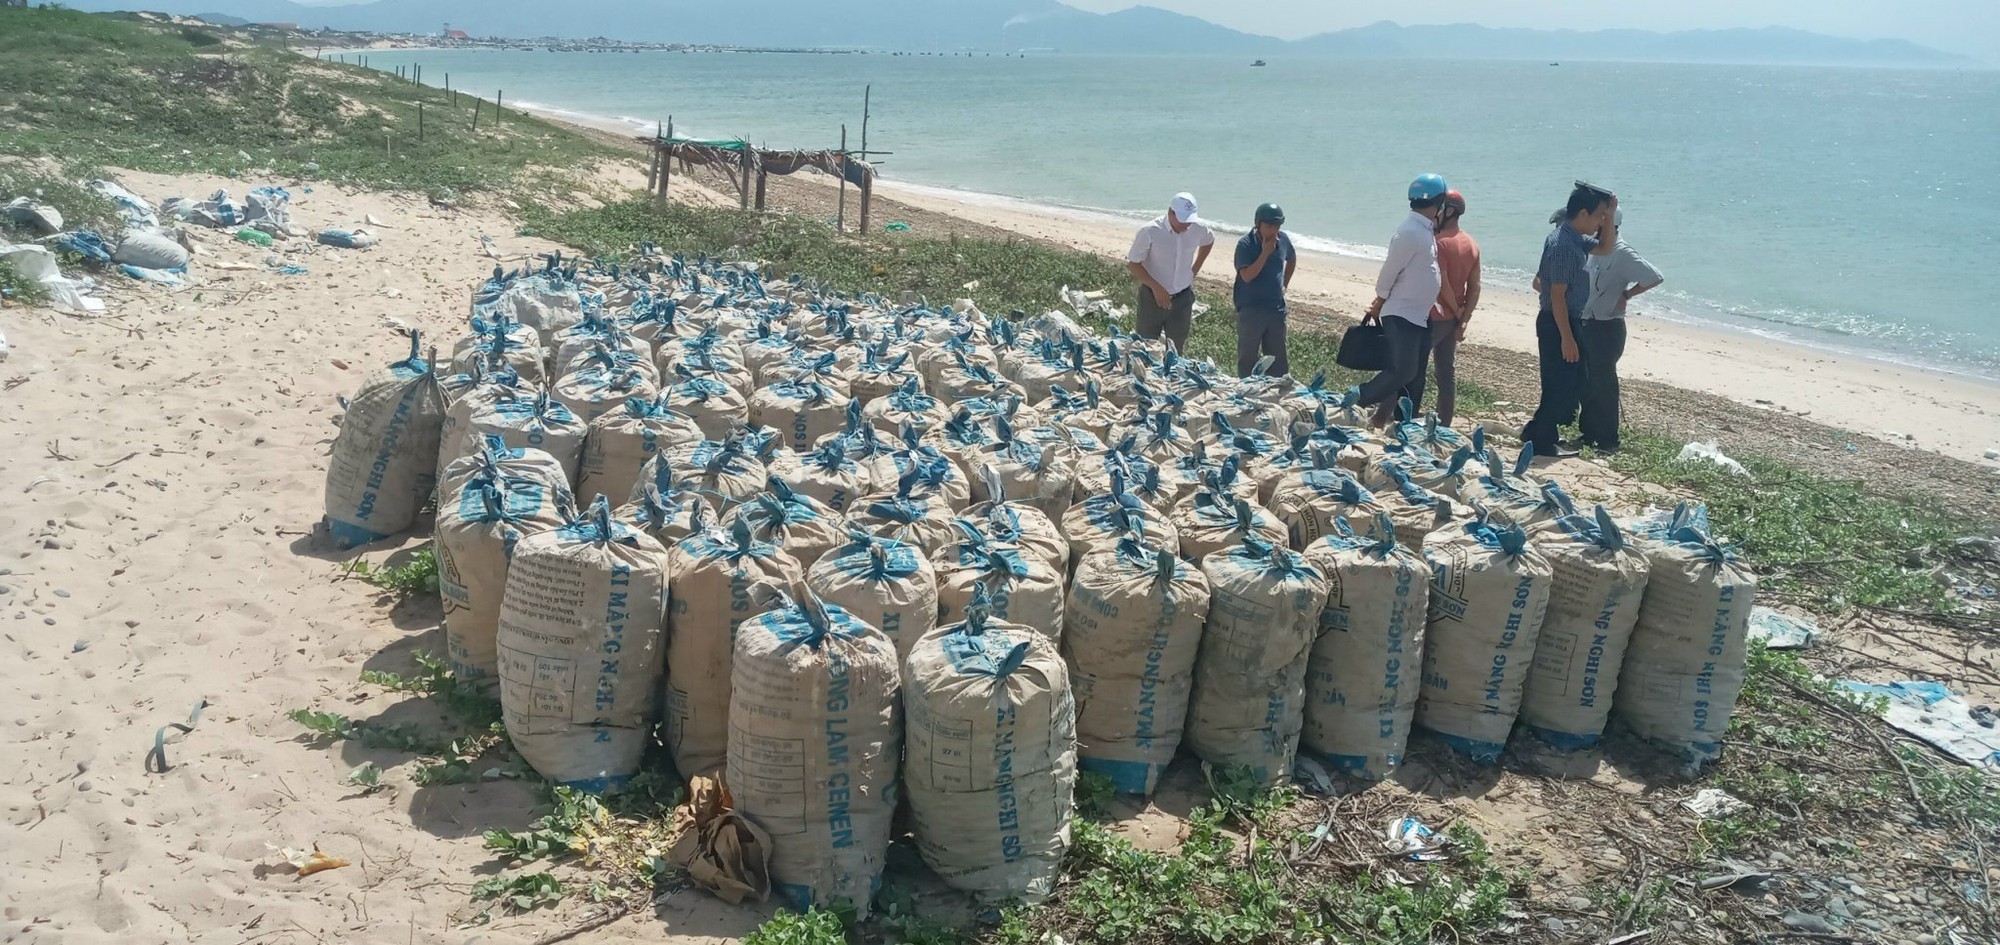 Vụ phát hiện 600 bao đá ở huyện Tuy Phong, xã báo cáo không phải đá trộm từ bãi đá 7 màu - Ảnh 1.